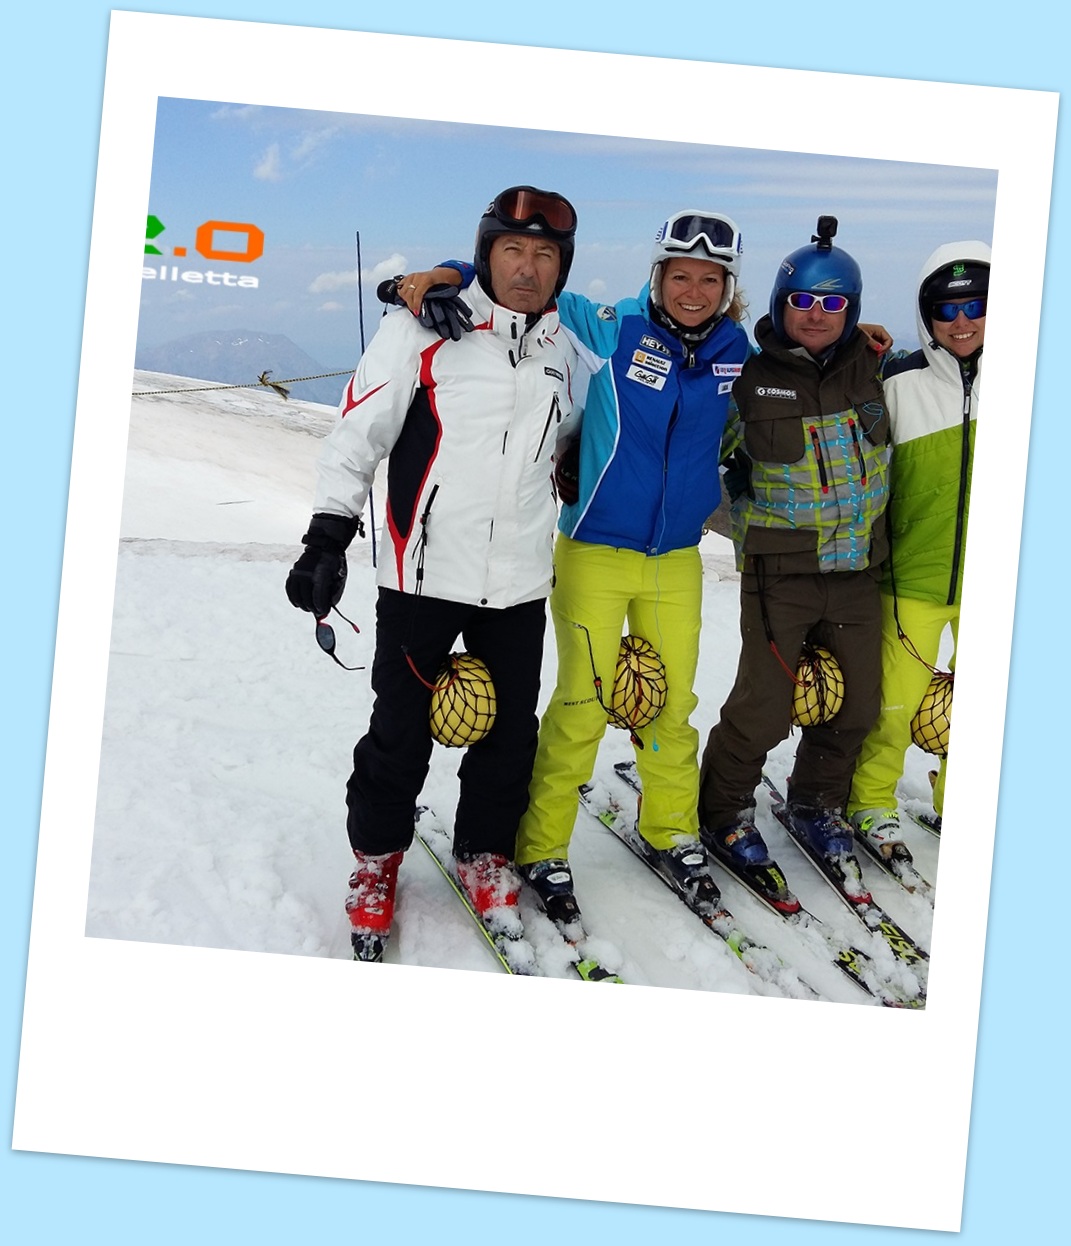 ski training corsi di sci abetone_ski college selletta